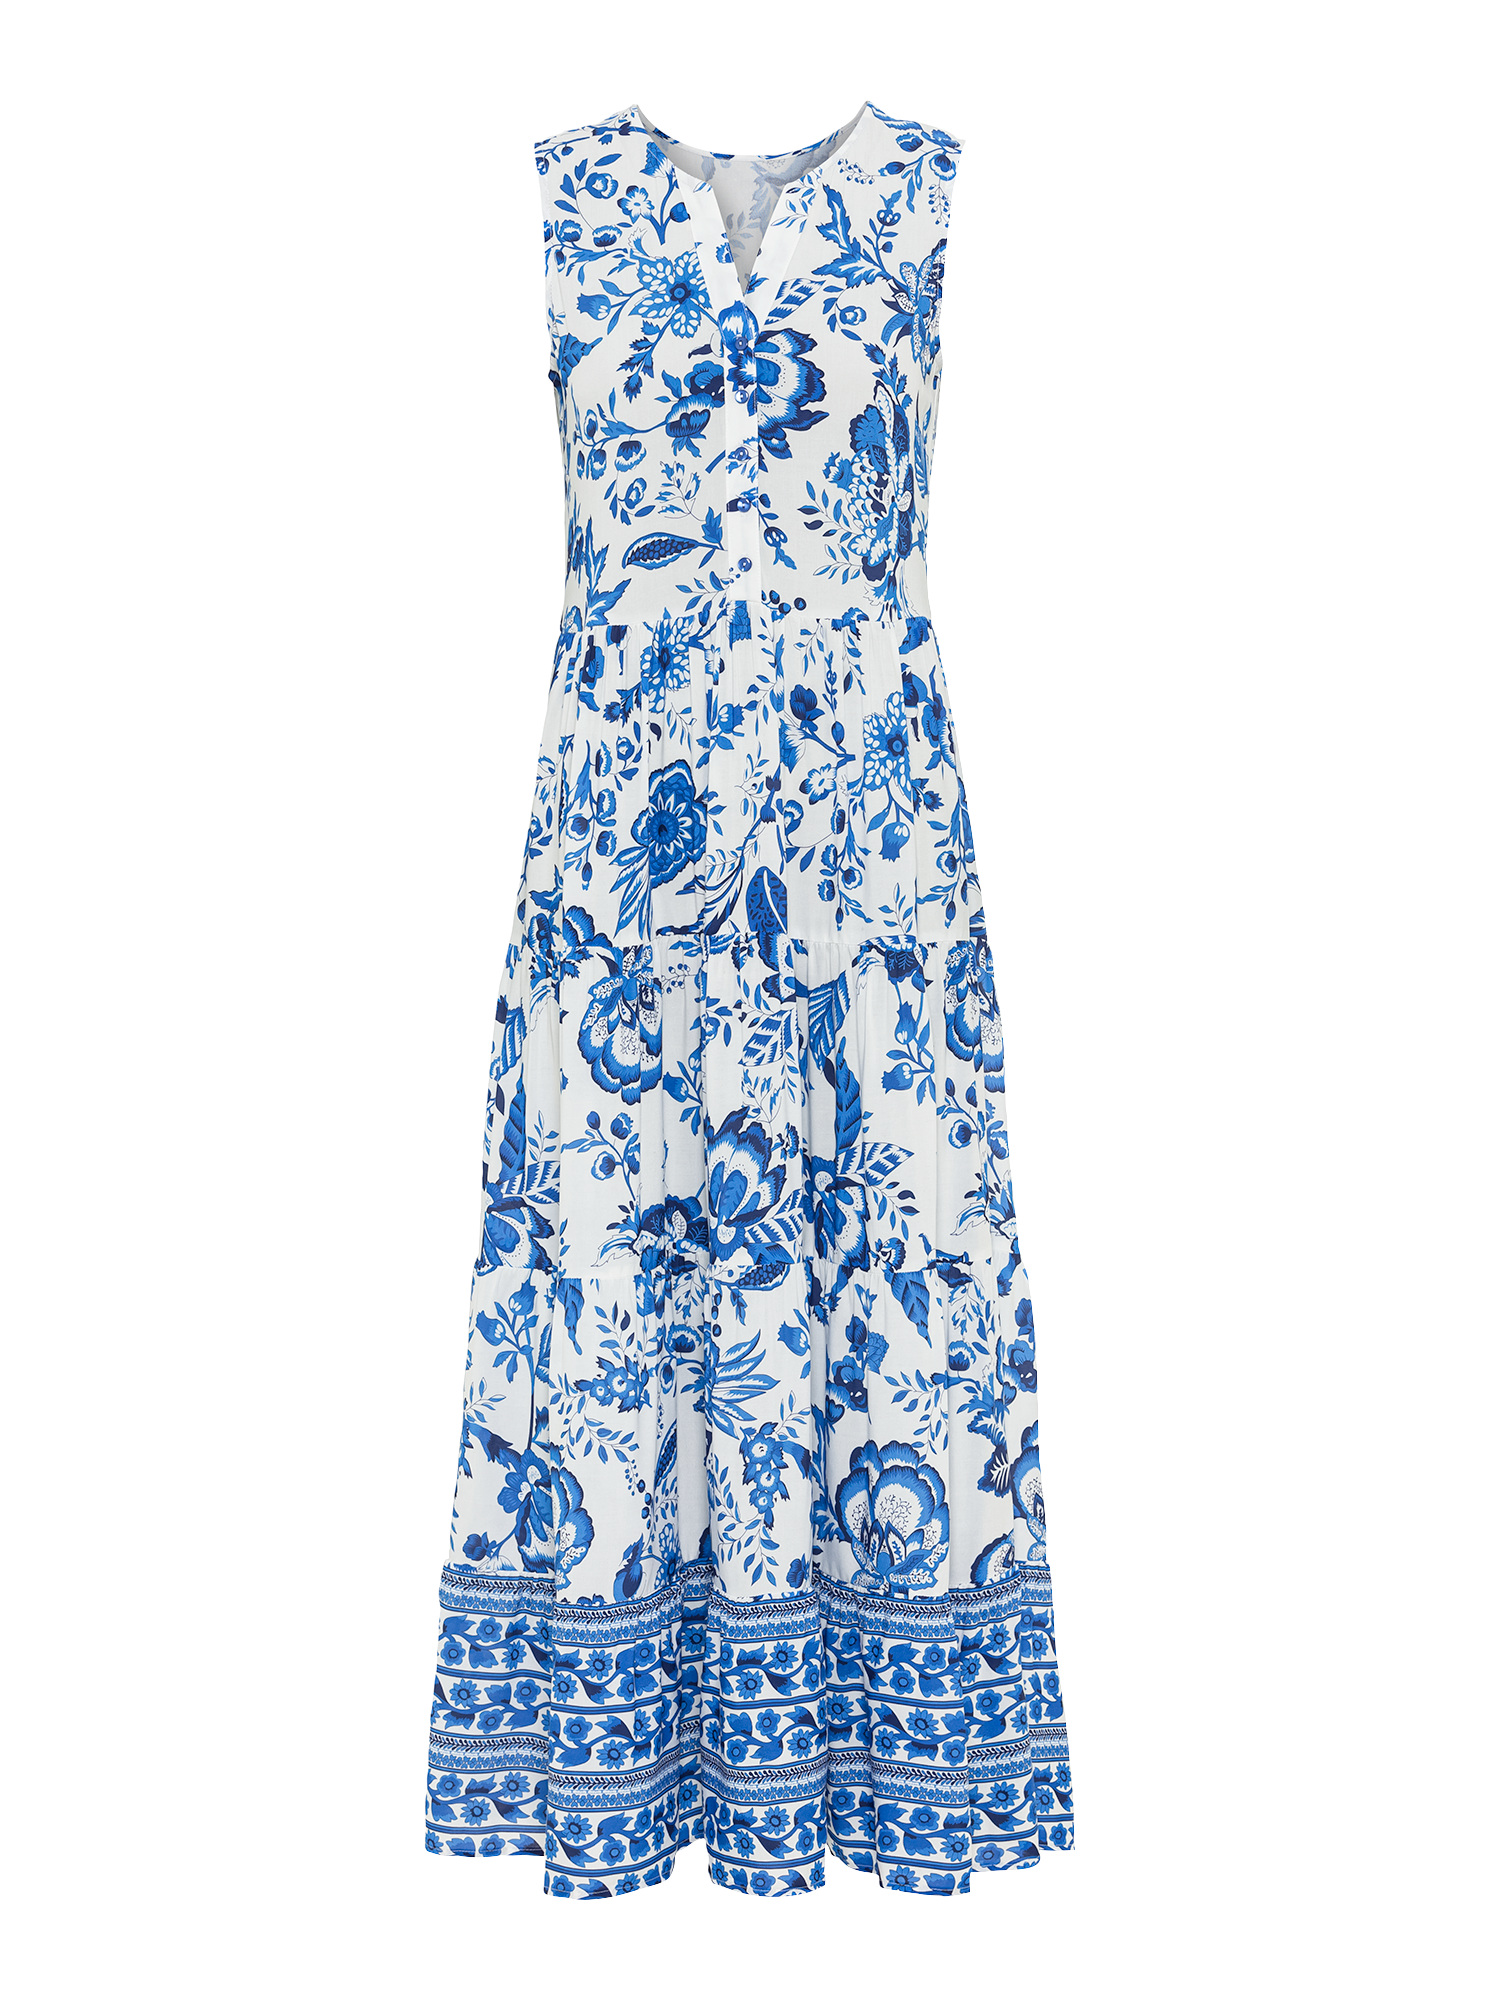 LASCANA Maxikleid, mit Blumenprint und Knopfleiste, Sommerkleid, Strandkleid